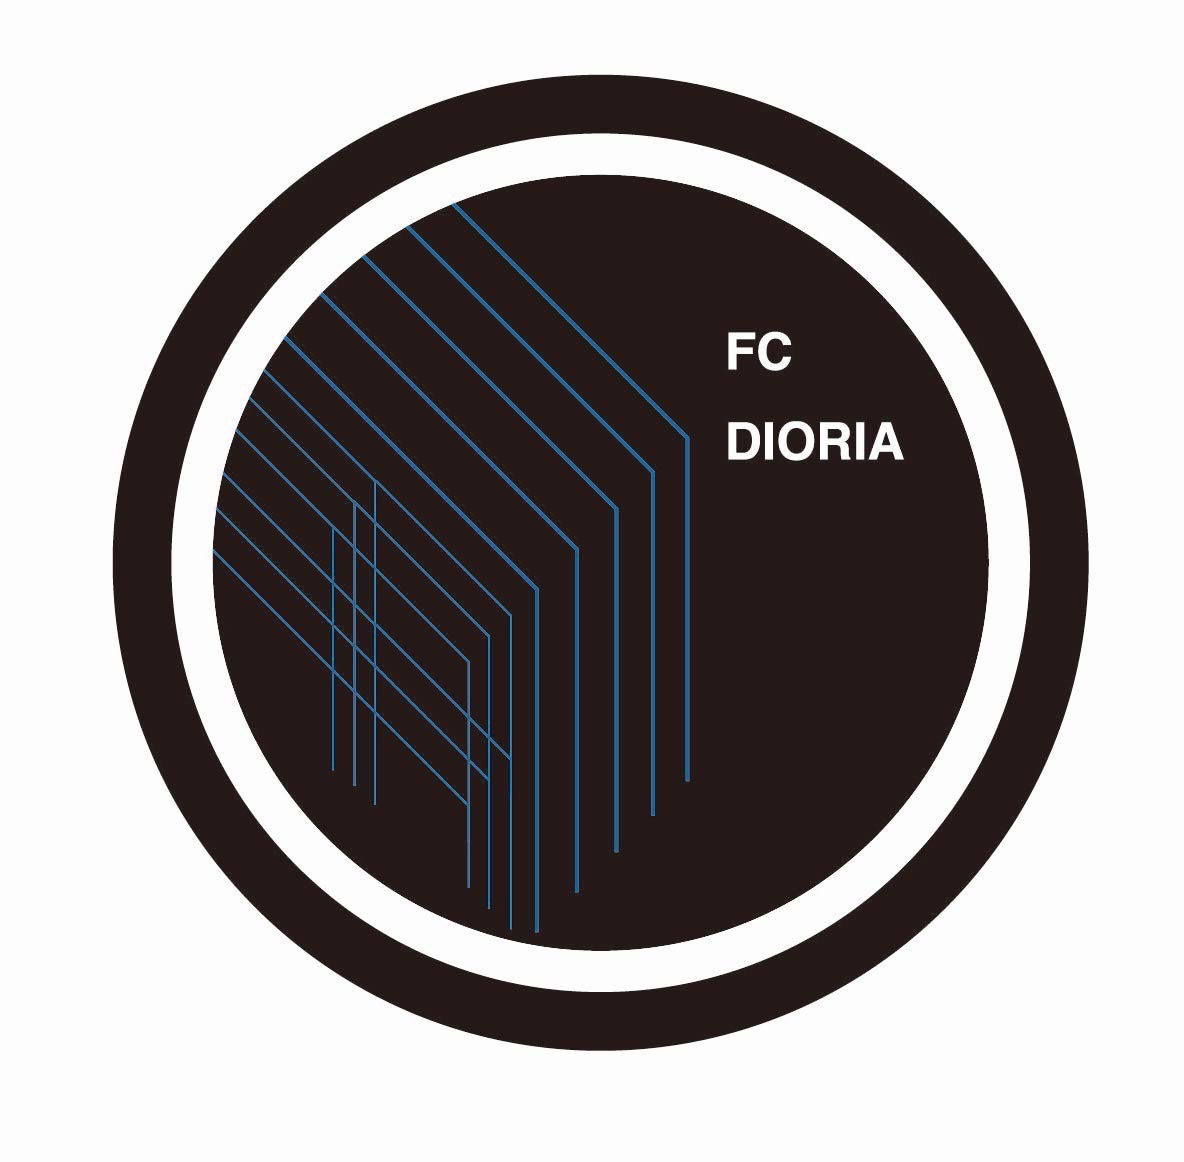 FC DIORIA